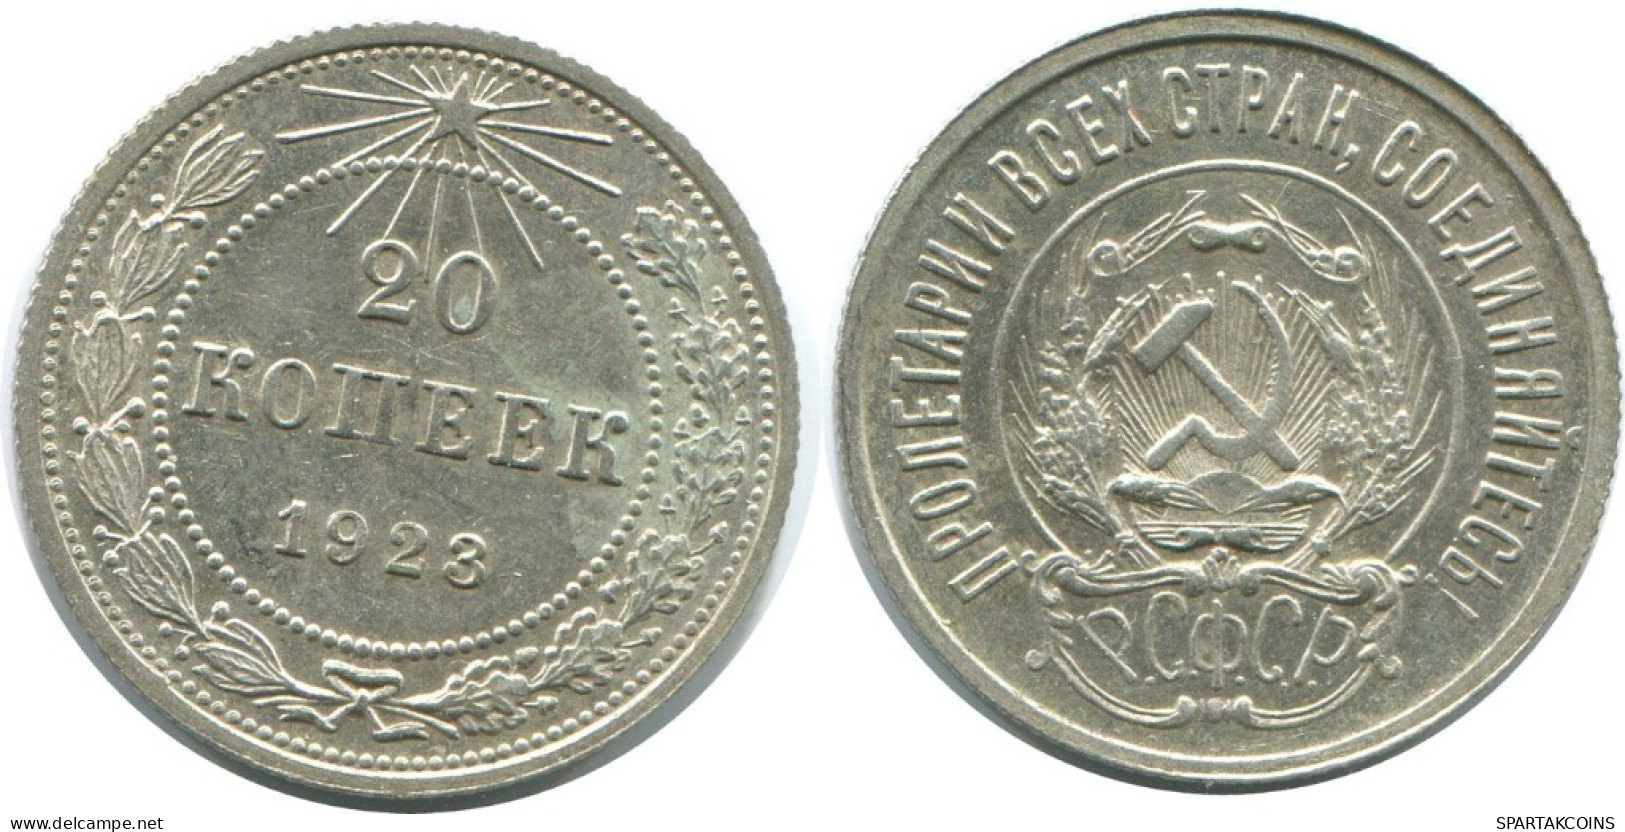 20 KOPEKS 1923 RUSSIA RSFSR SILVER Coin HIGH GRADE #AF568.4.U.A - Russland